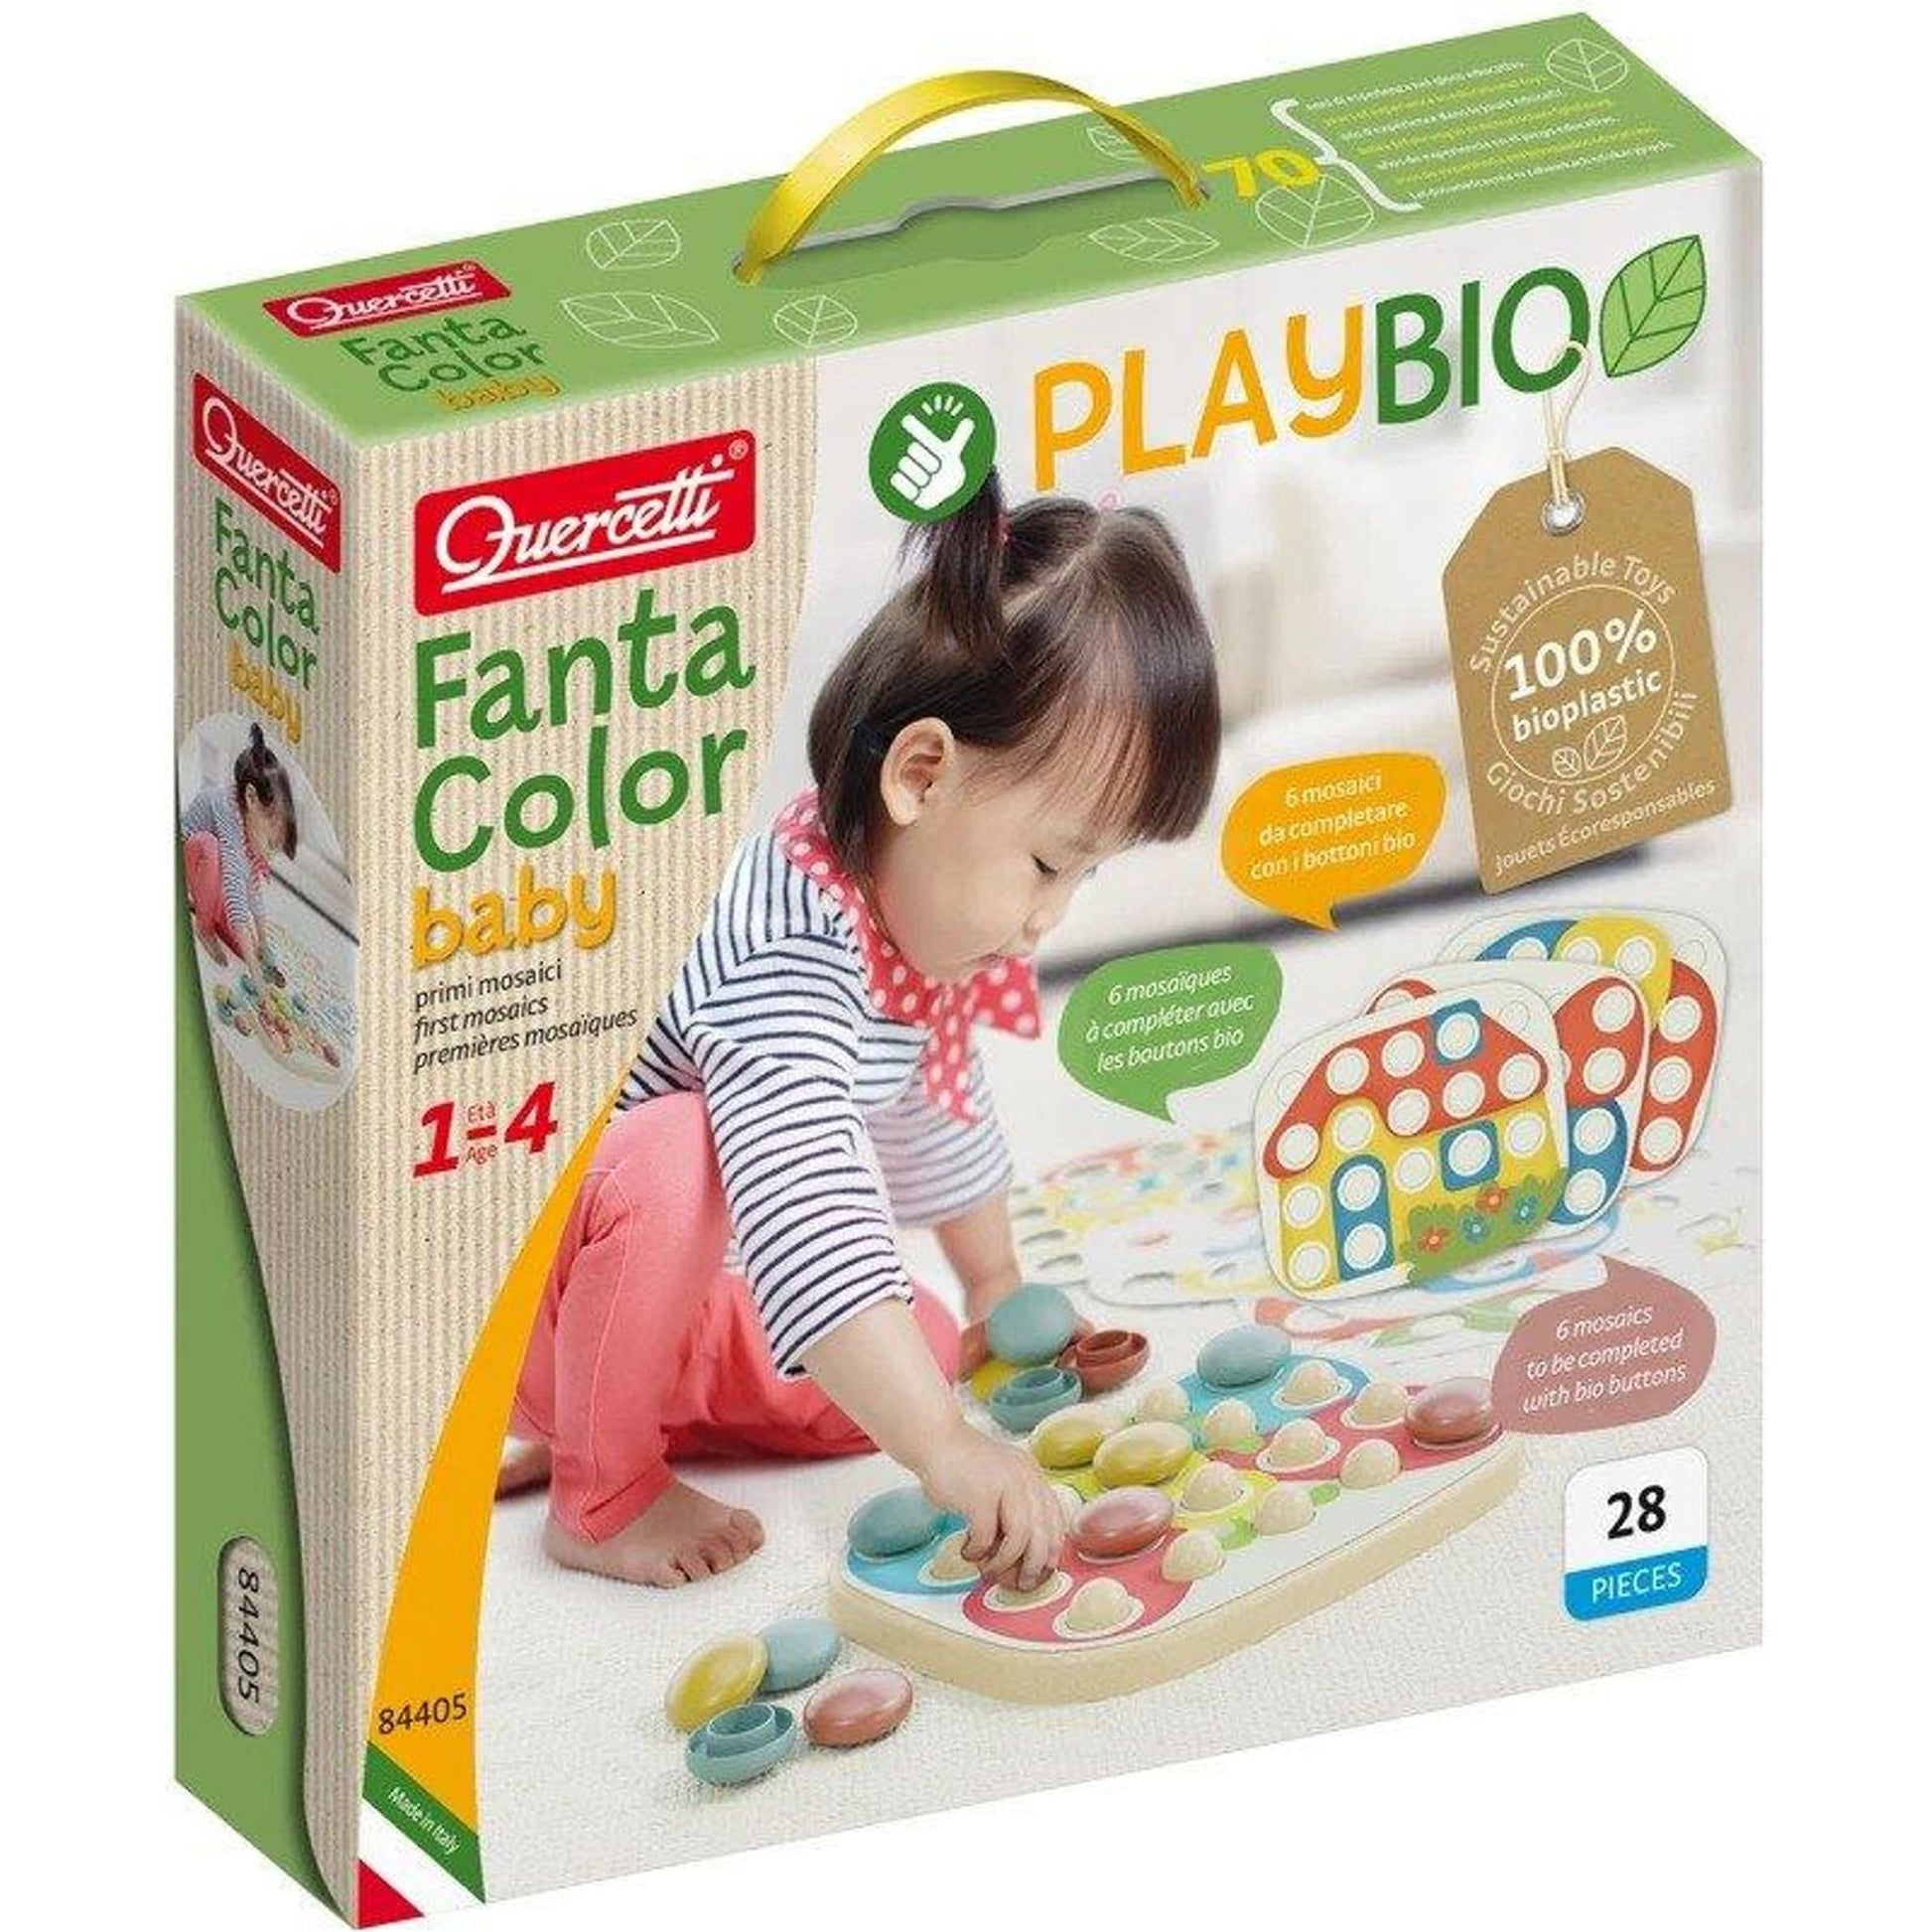 Play Bio Fanta Color Baby - Toybox Tales